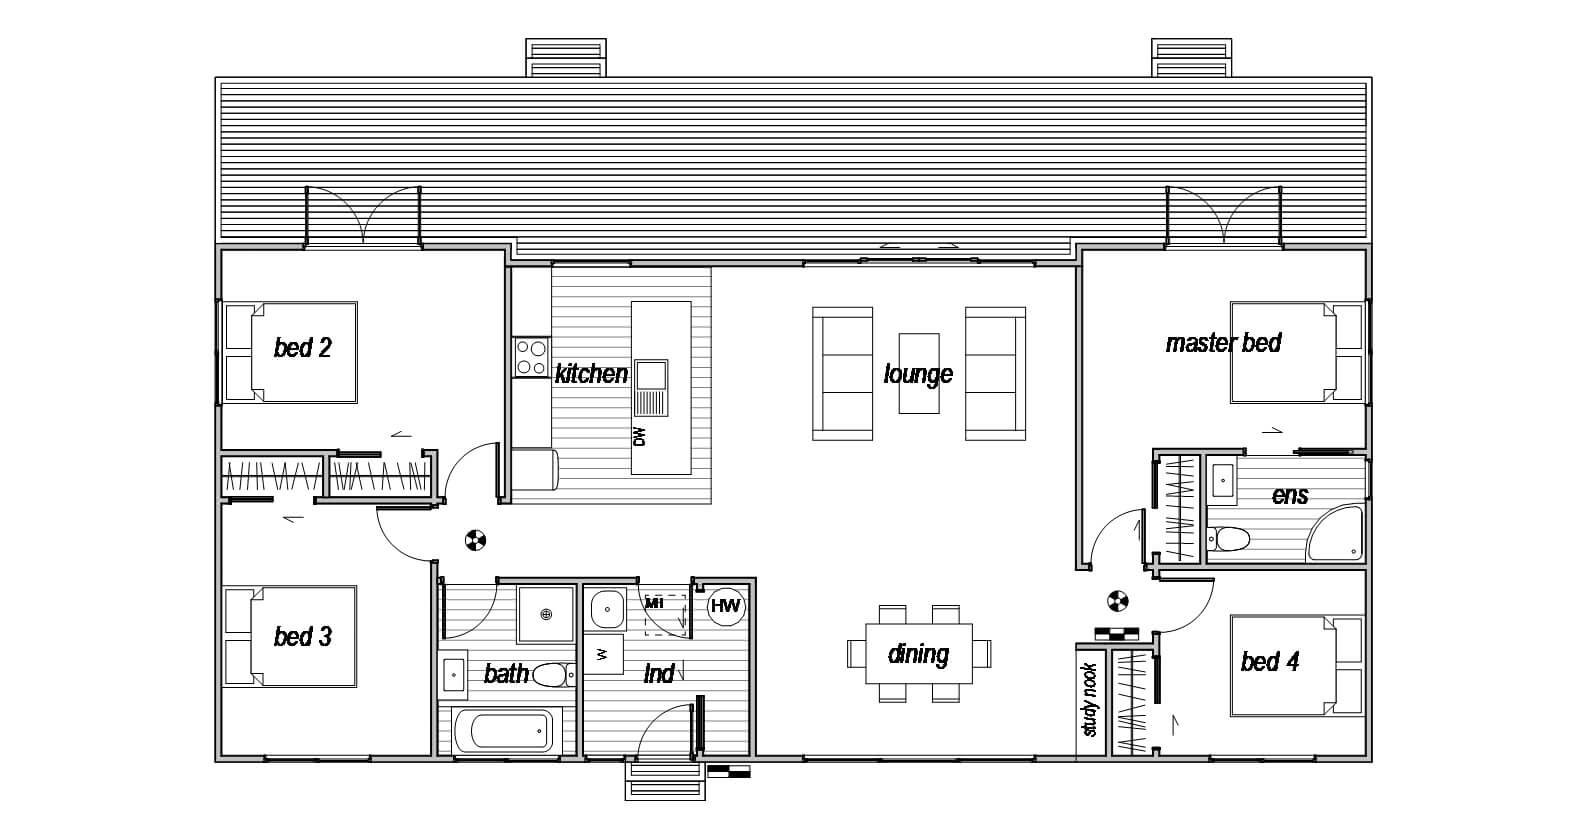 4 bedroom house floor plan